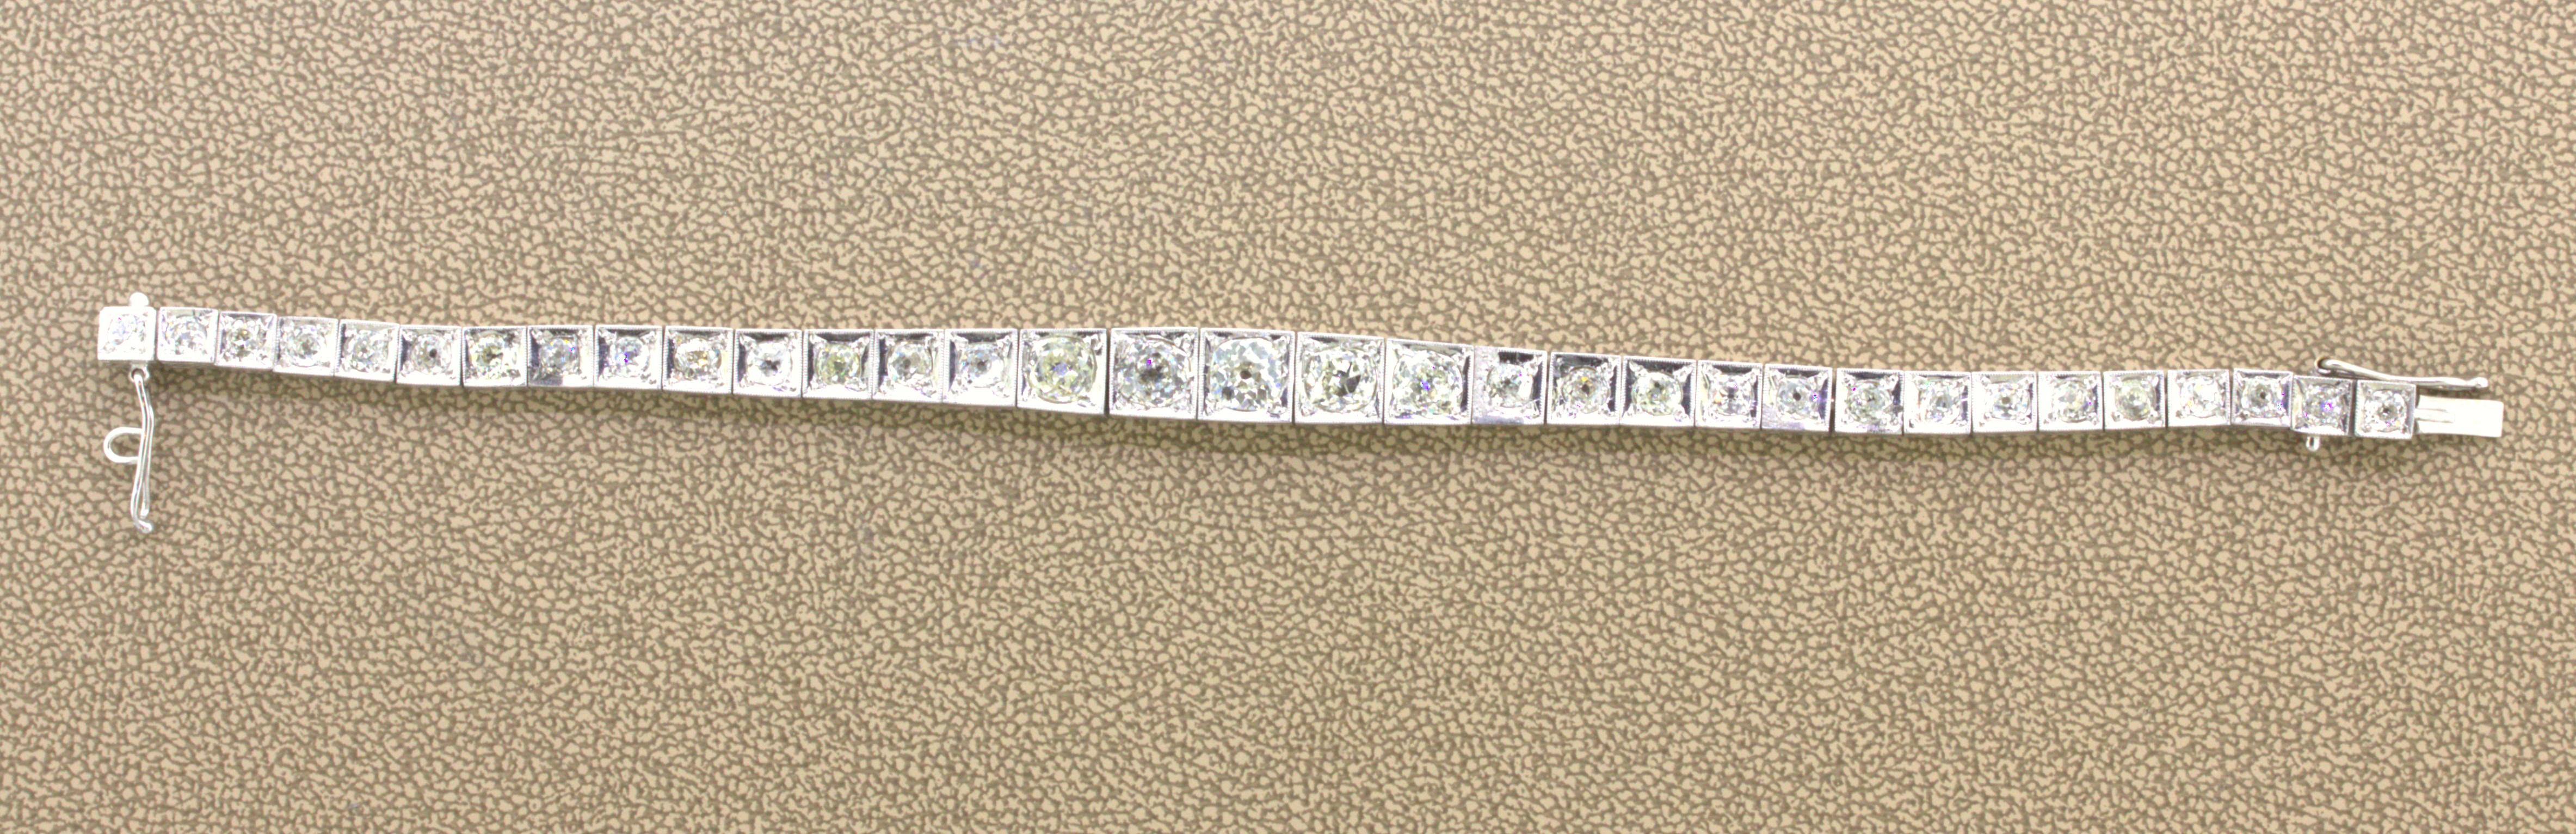 Platin-Tennisarmband im Art déco-Stil mit Diamanten

Ein elegantes und stilvolles Art-Déco-Diamant-Tennisarmband aus den 1930er Jahren. Er weist eine Reihe von Diamanten im Altschliff mit einem Gesamtgewicht von etwa 7,00 Karat auf, wobei der größte